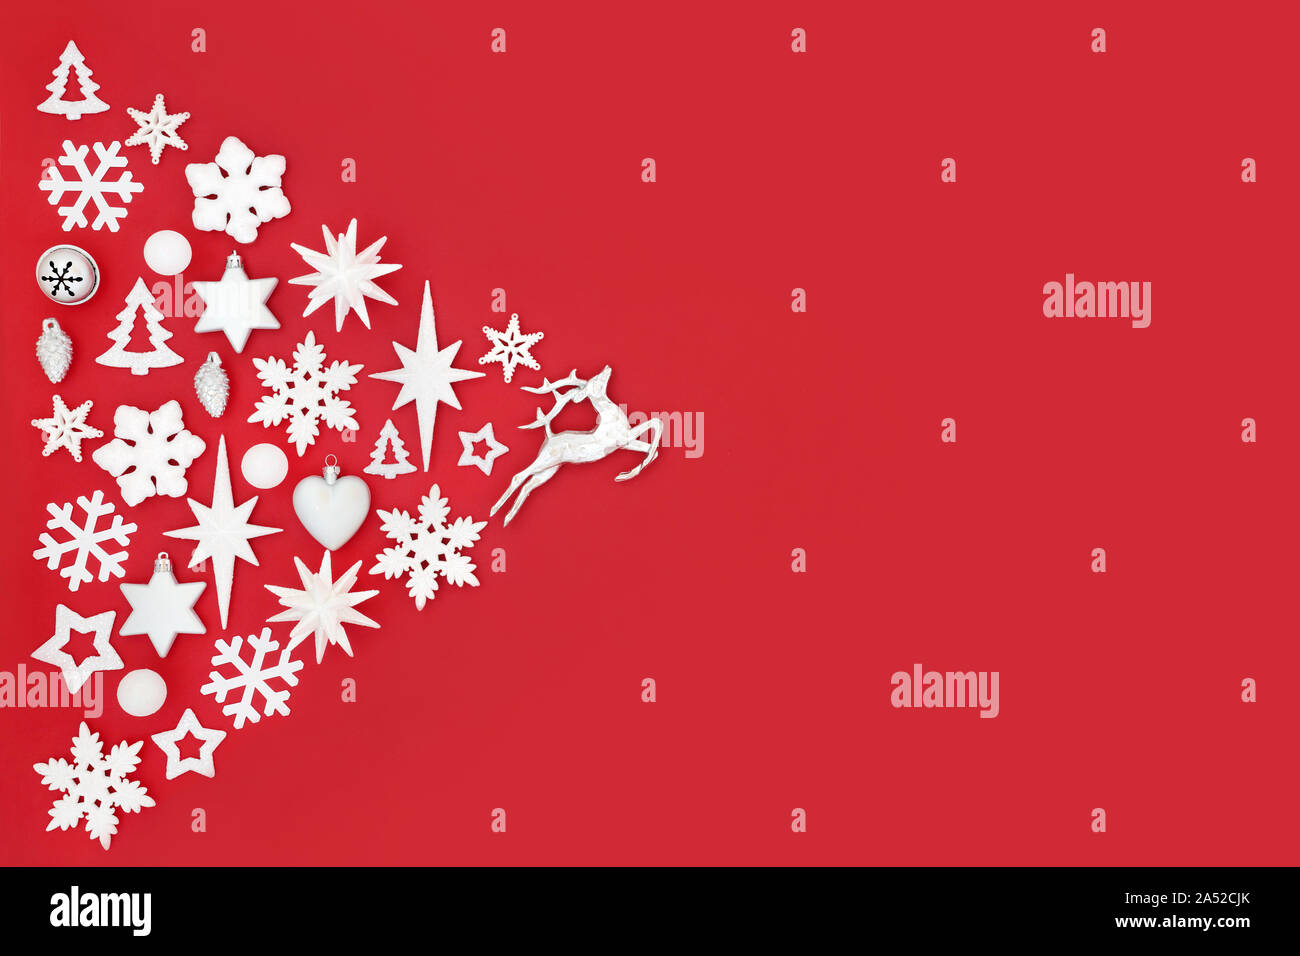 Résumé fond de Noël blanc et argent avec des décorations de l'arbre et les symboles sur le rouge avec l'exemplaire de l'espace. Thème traditionnel pour les fêtes. Banque D'Images